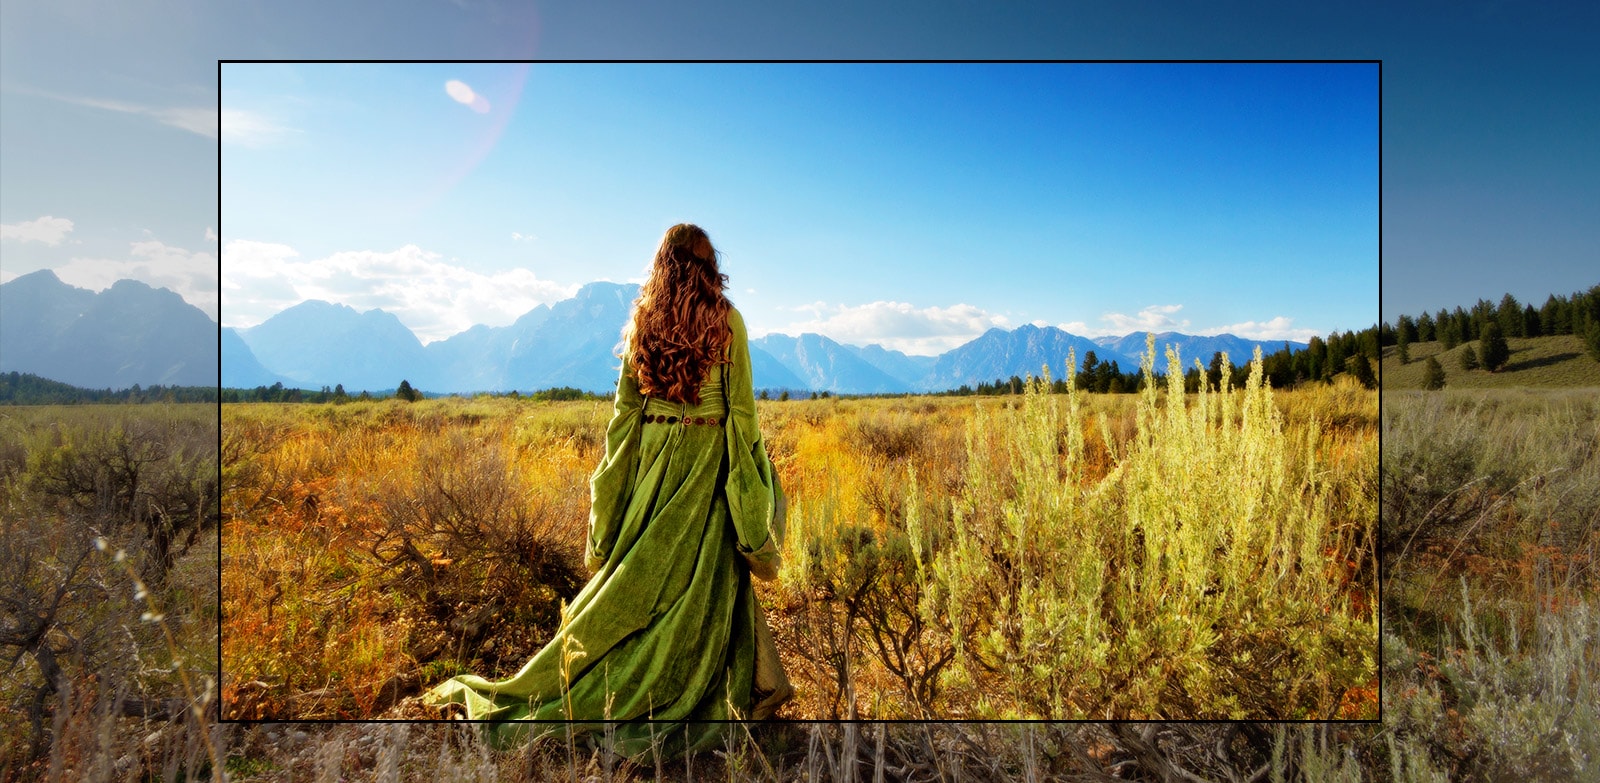 Un ecran TV care prezintă o scenă dintr-un film fantastic, cu o femeie care stă pe o câmpie, cu fața spre munți.